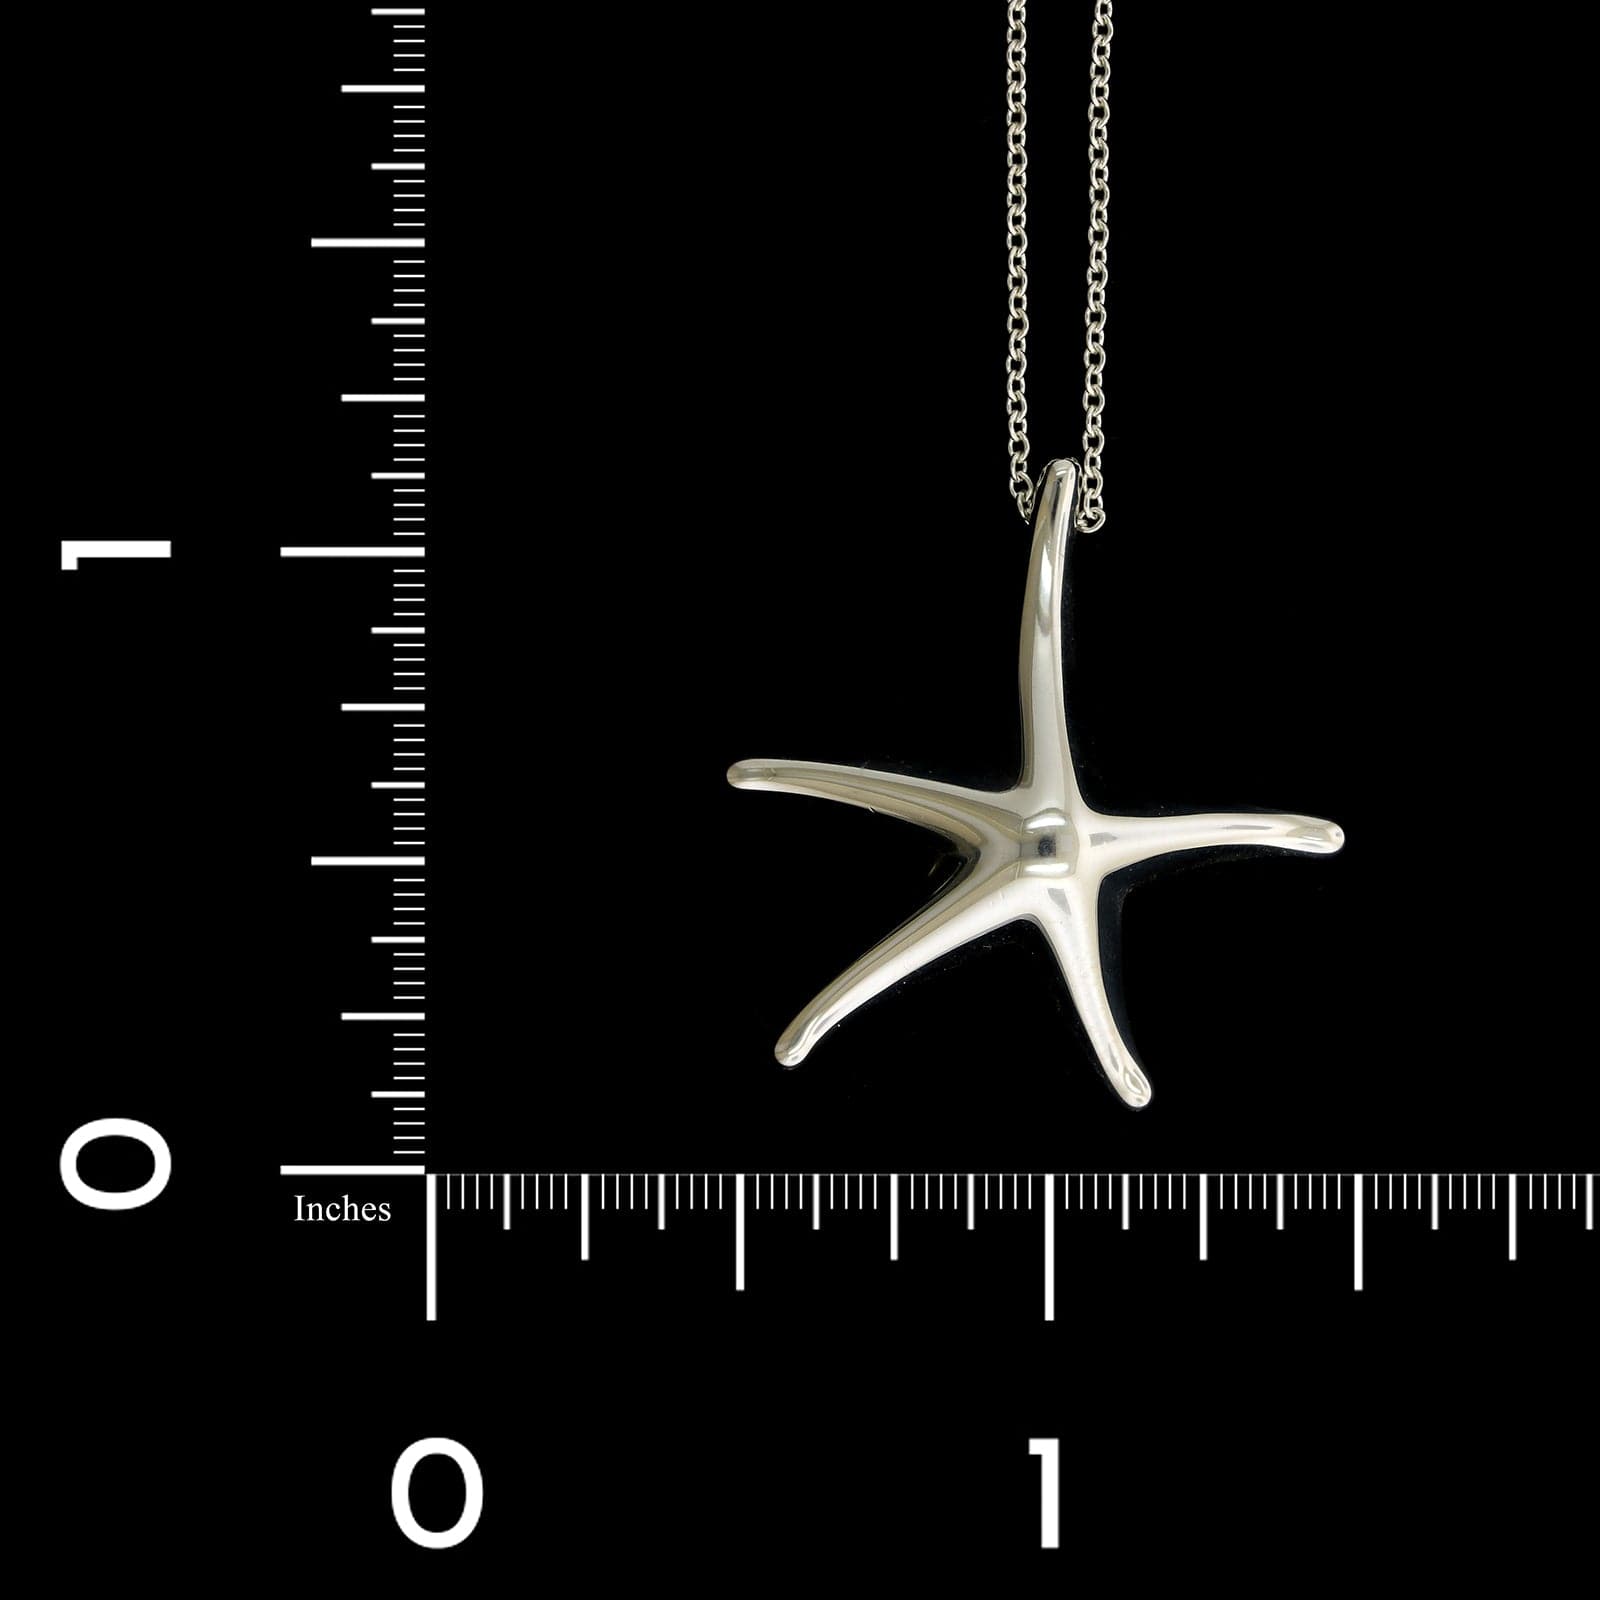 Tiffany & Co. Elsa Peretti Sterling Silver Estate Starfish Pendant